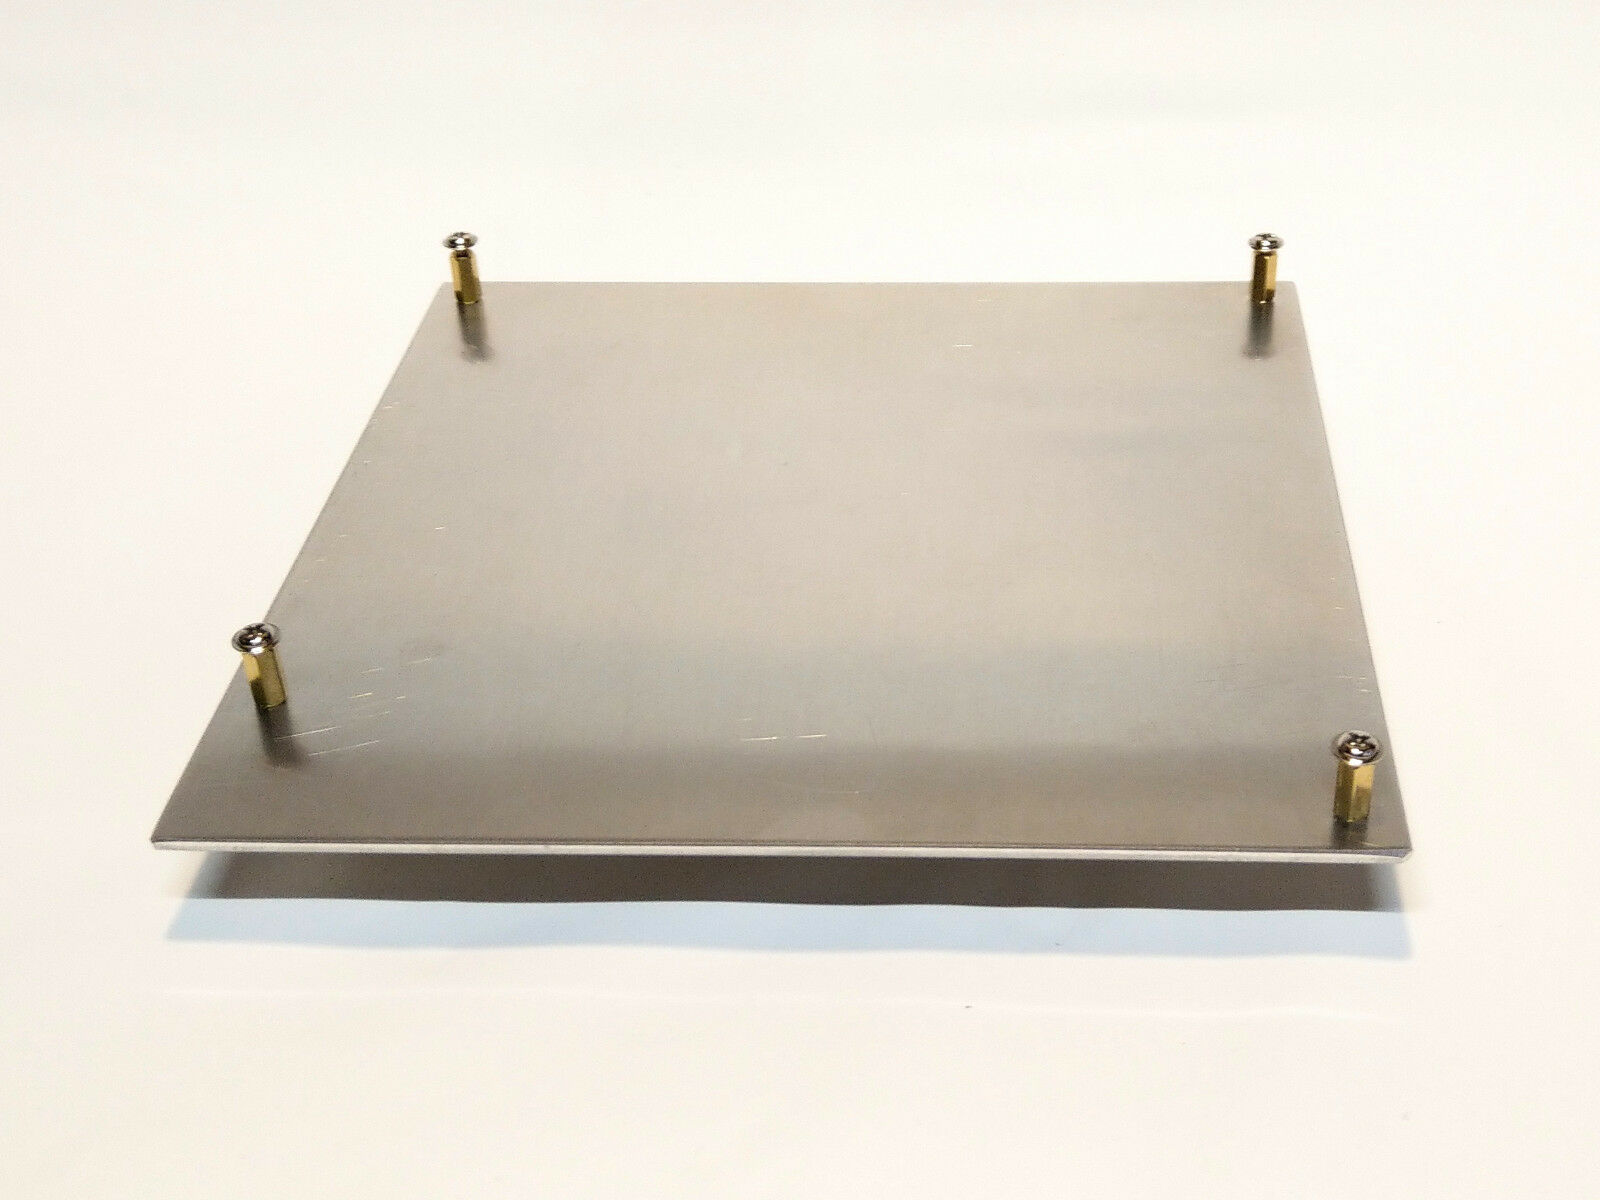 Mini-itx Aluminum Motherboard Tray W/ Standoffs 6.75"x6.75x0.090"